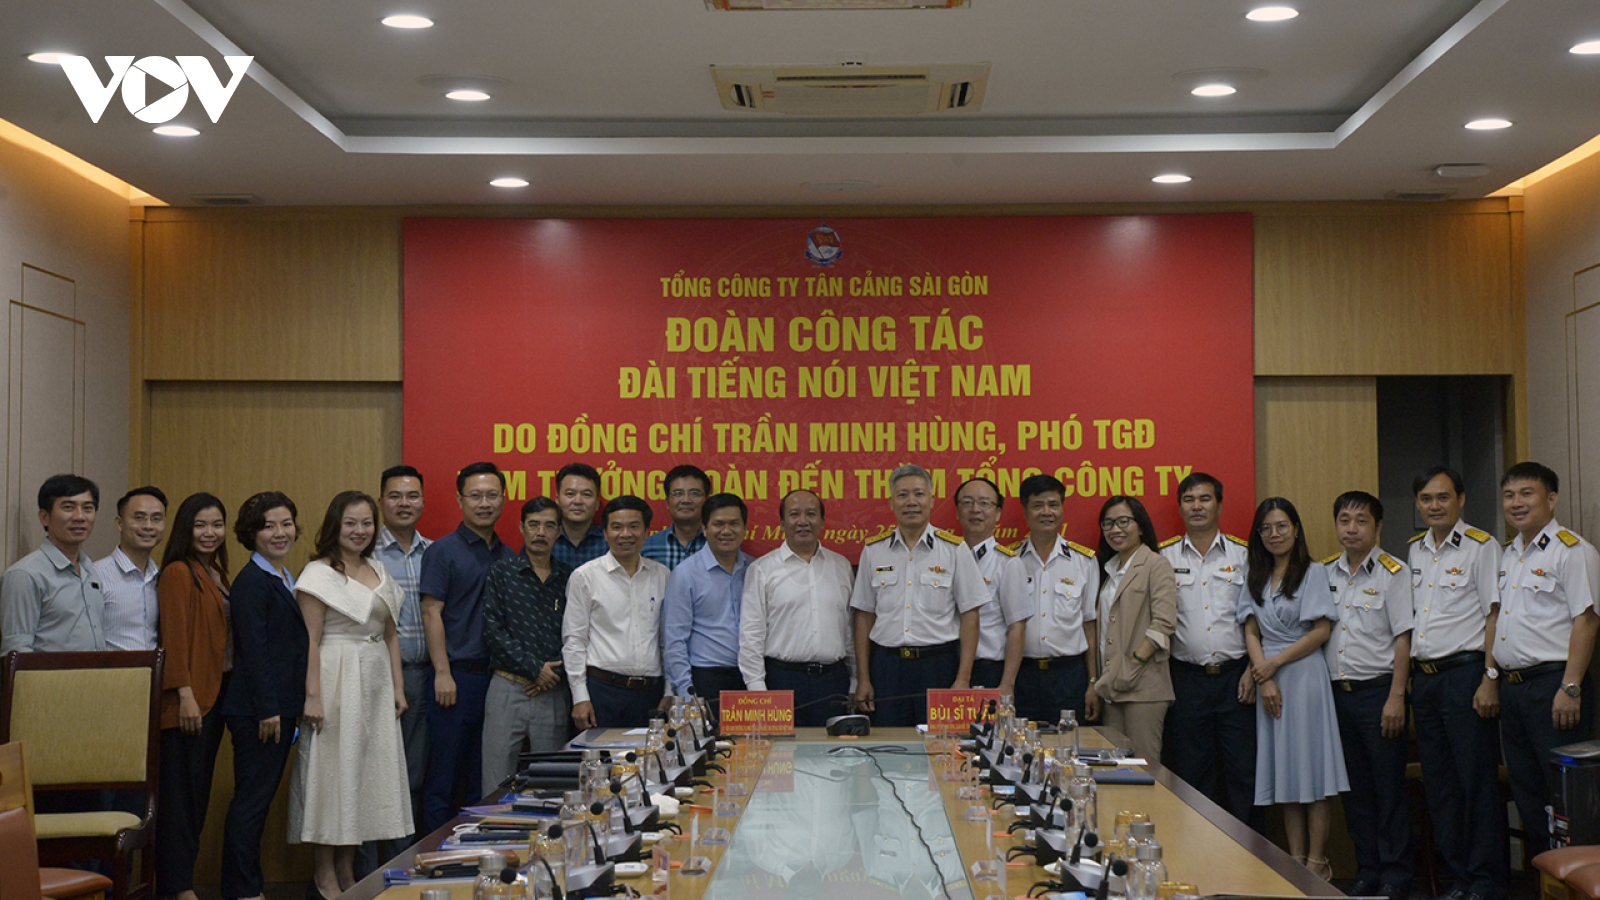 Đoàn công tác VOV làm việc với Tổng Công ty Tân Cảng Sài Gòn